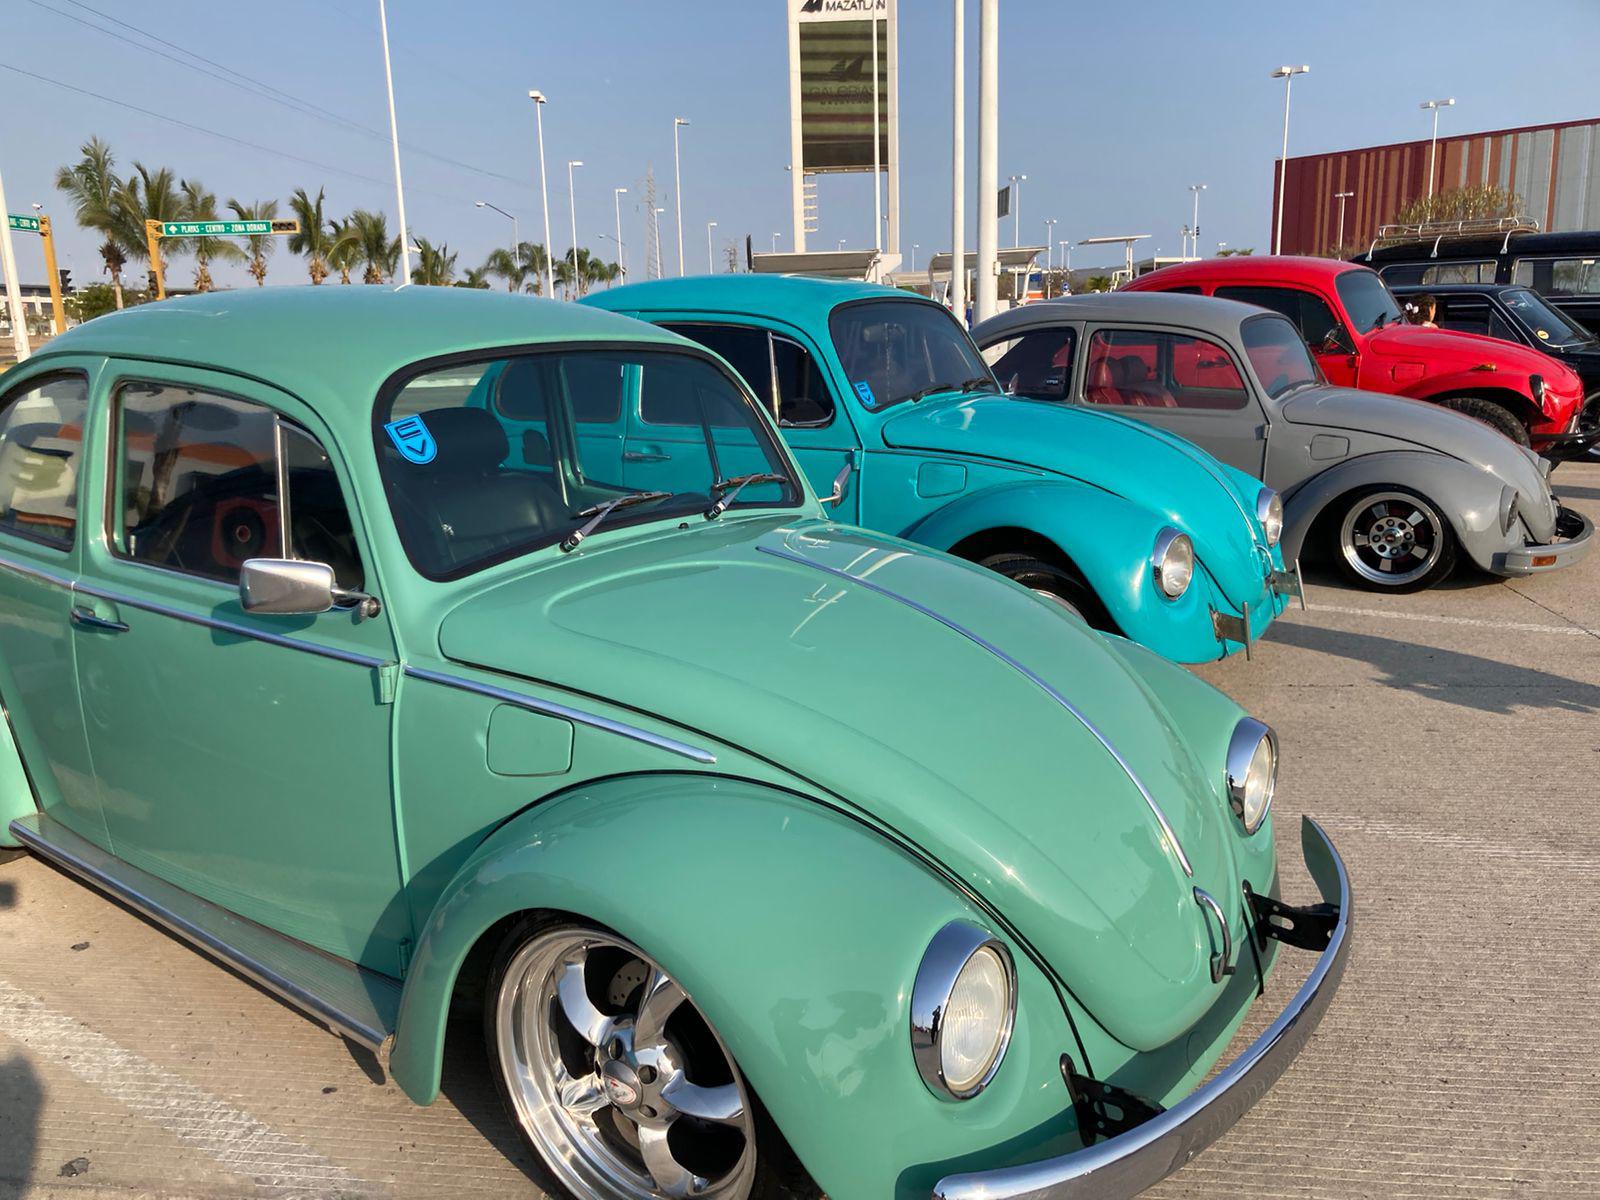 $!Unos 500 Volkswagen de gama clásica invadirán este fin de semana Mazatlán